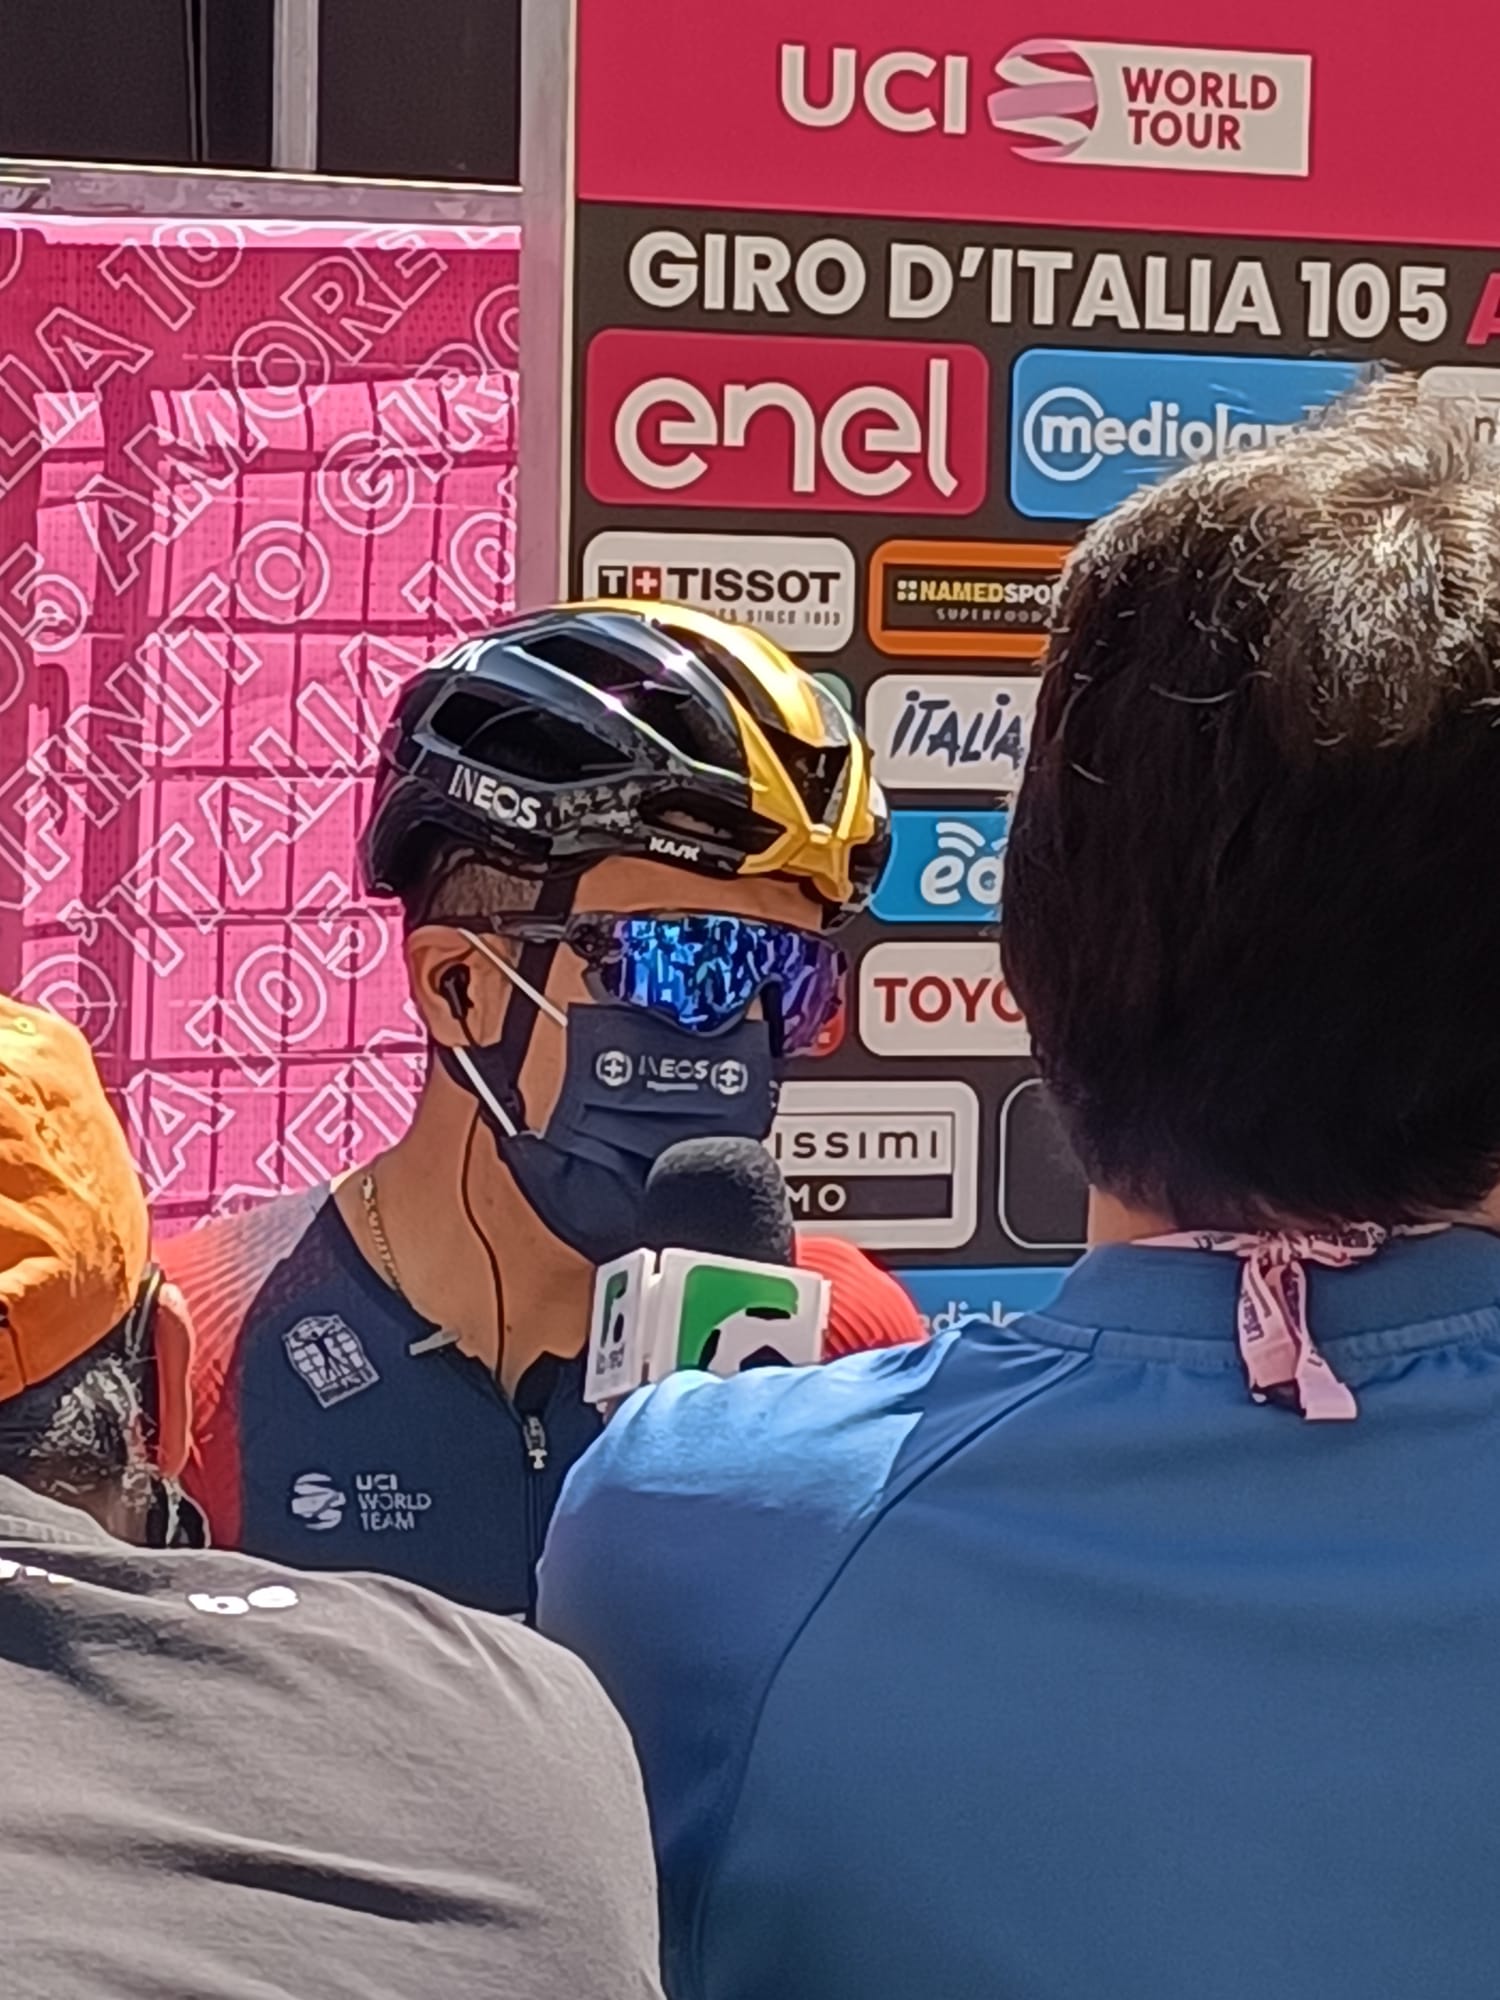 Giro d'Italia a Catania: i partecipanti